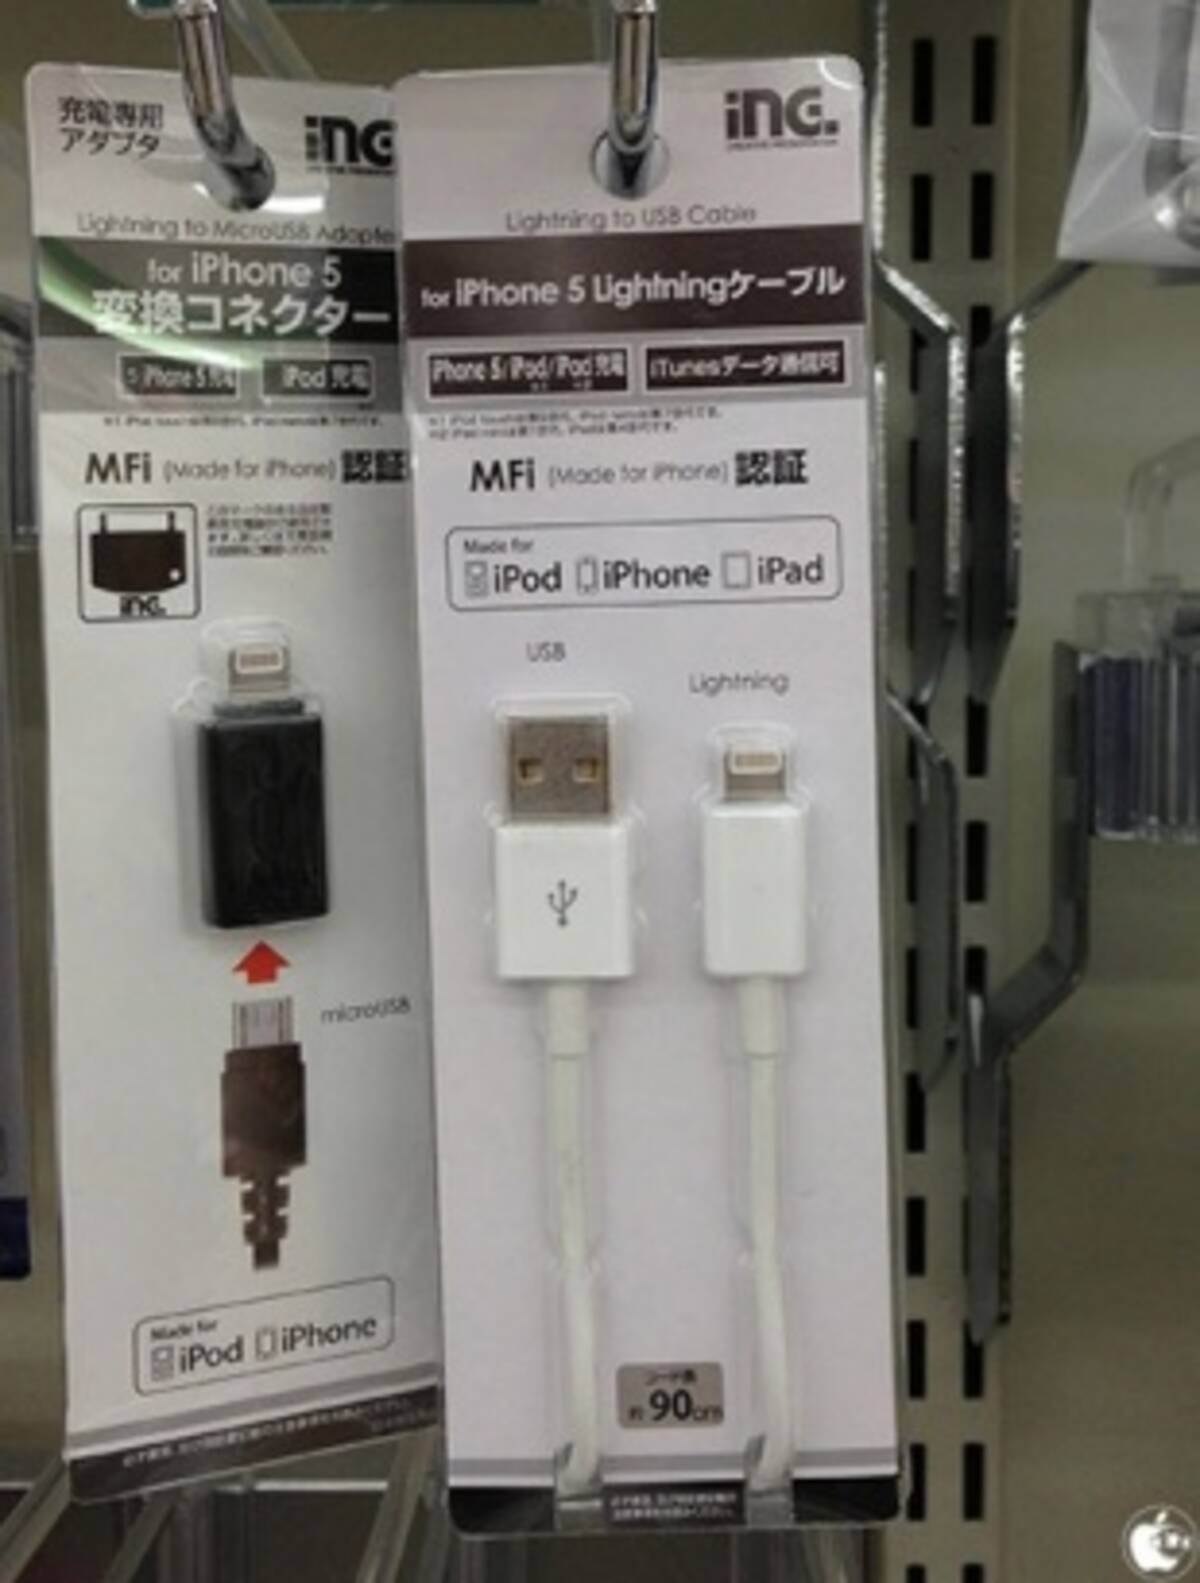 多摩電子工業 コンビニでmfi ライセンス取得lightningケーブル Aid04w For Iphone5 Lightningケーブル を販売開始 13年4月2日 エキサイトニュース